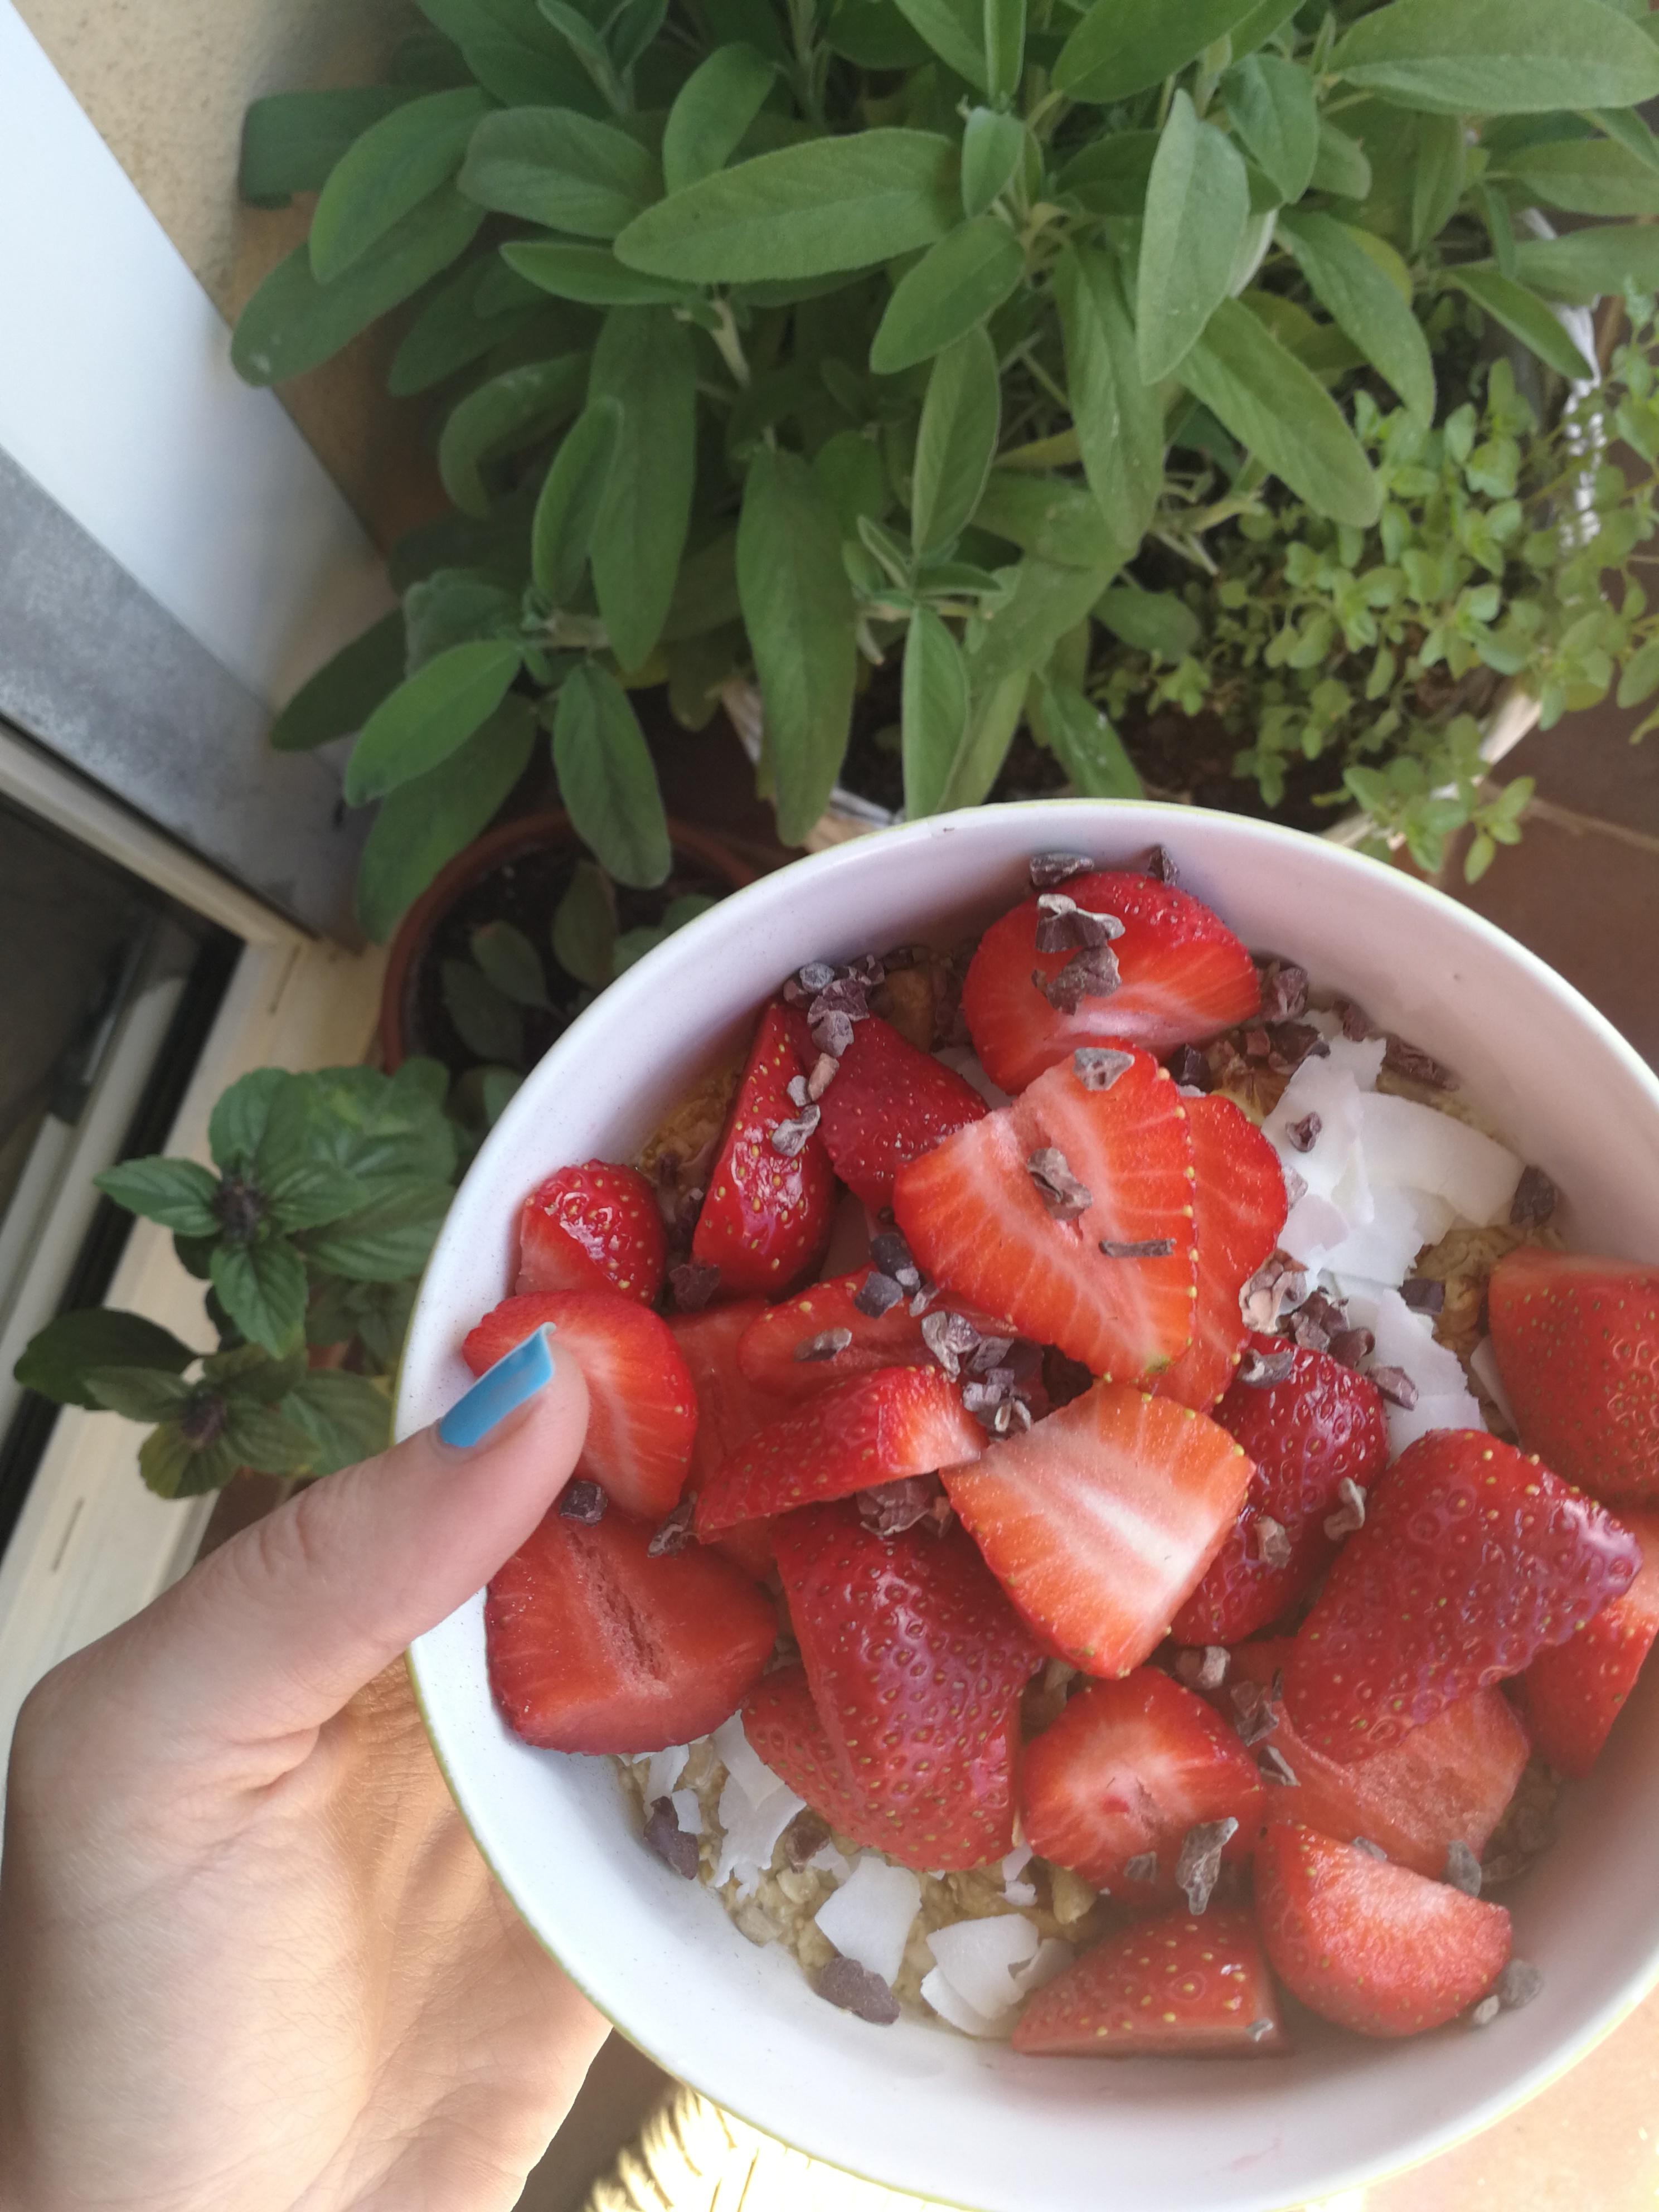 Sunday Mornings 🦄

#balkonliebe #grün #pflanzen #kräuter #erdbeeren #sommer #frühling